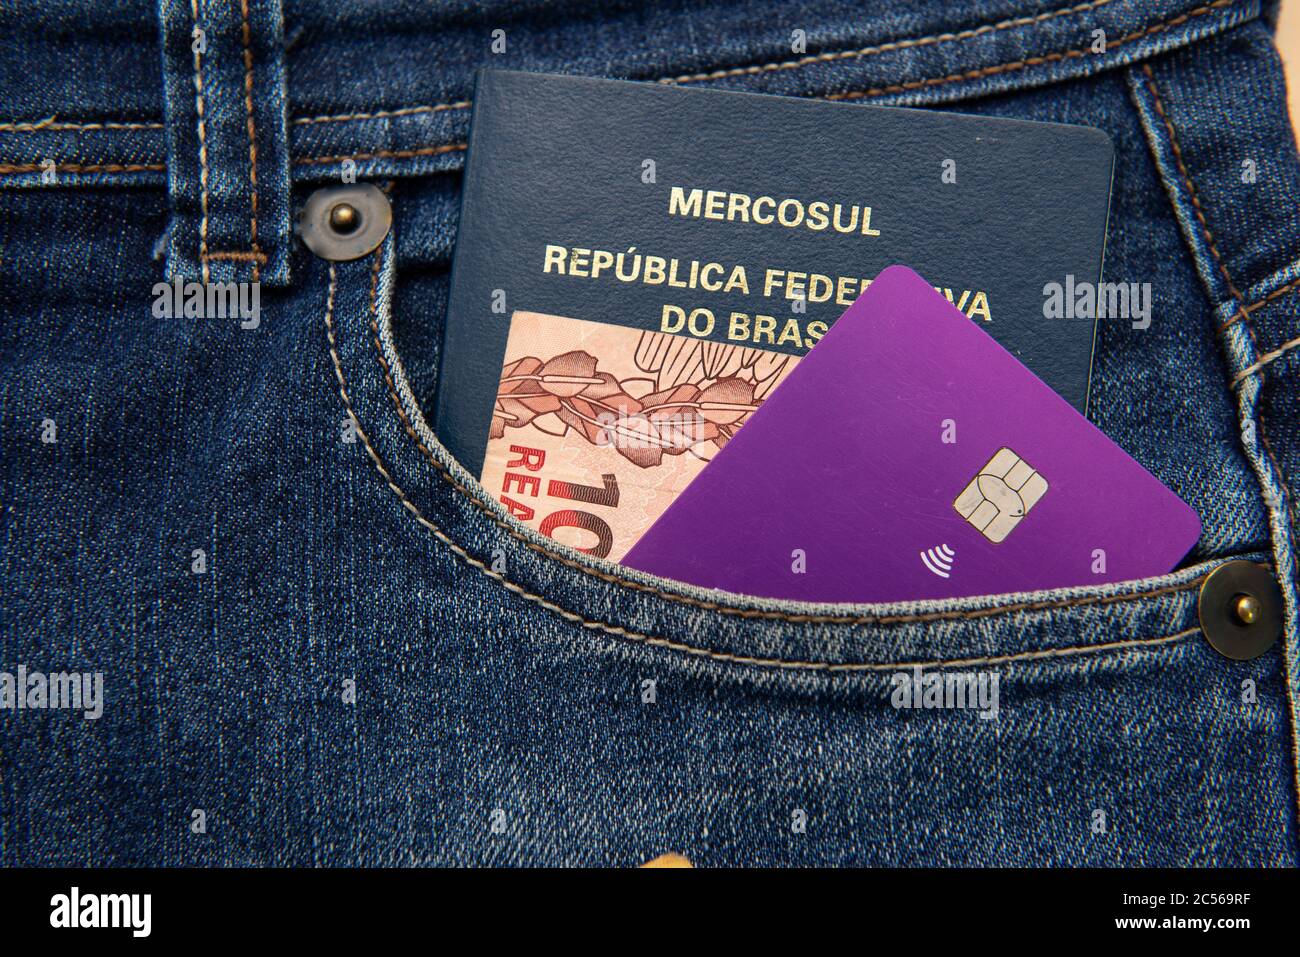 Gros plan du passeport brésilien, des billets et de la carte de crédit dans la poche du pantalon. Traduire: Mercosur - République fédérative du Brésil - Passeport. Banque D'Images